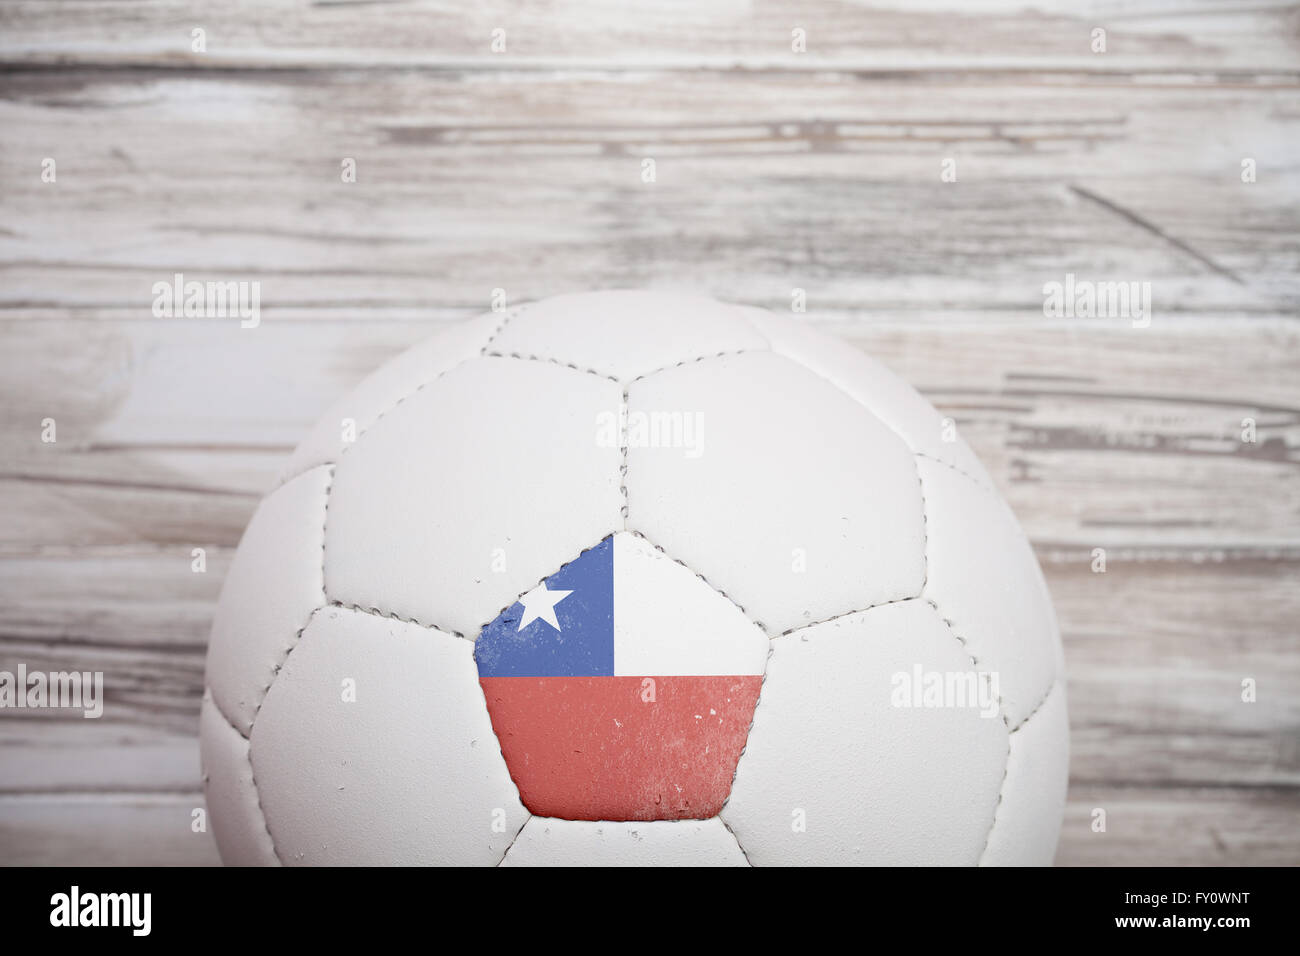 Serie mit einem Fußball mit des Landes Flaggen-Symbol auf einem Panel. Stockfoto